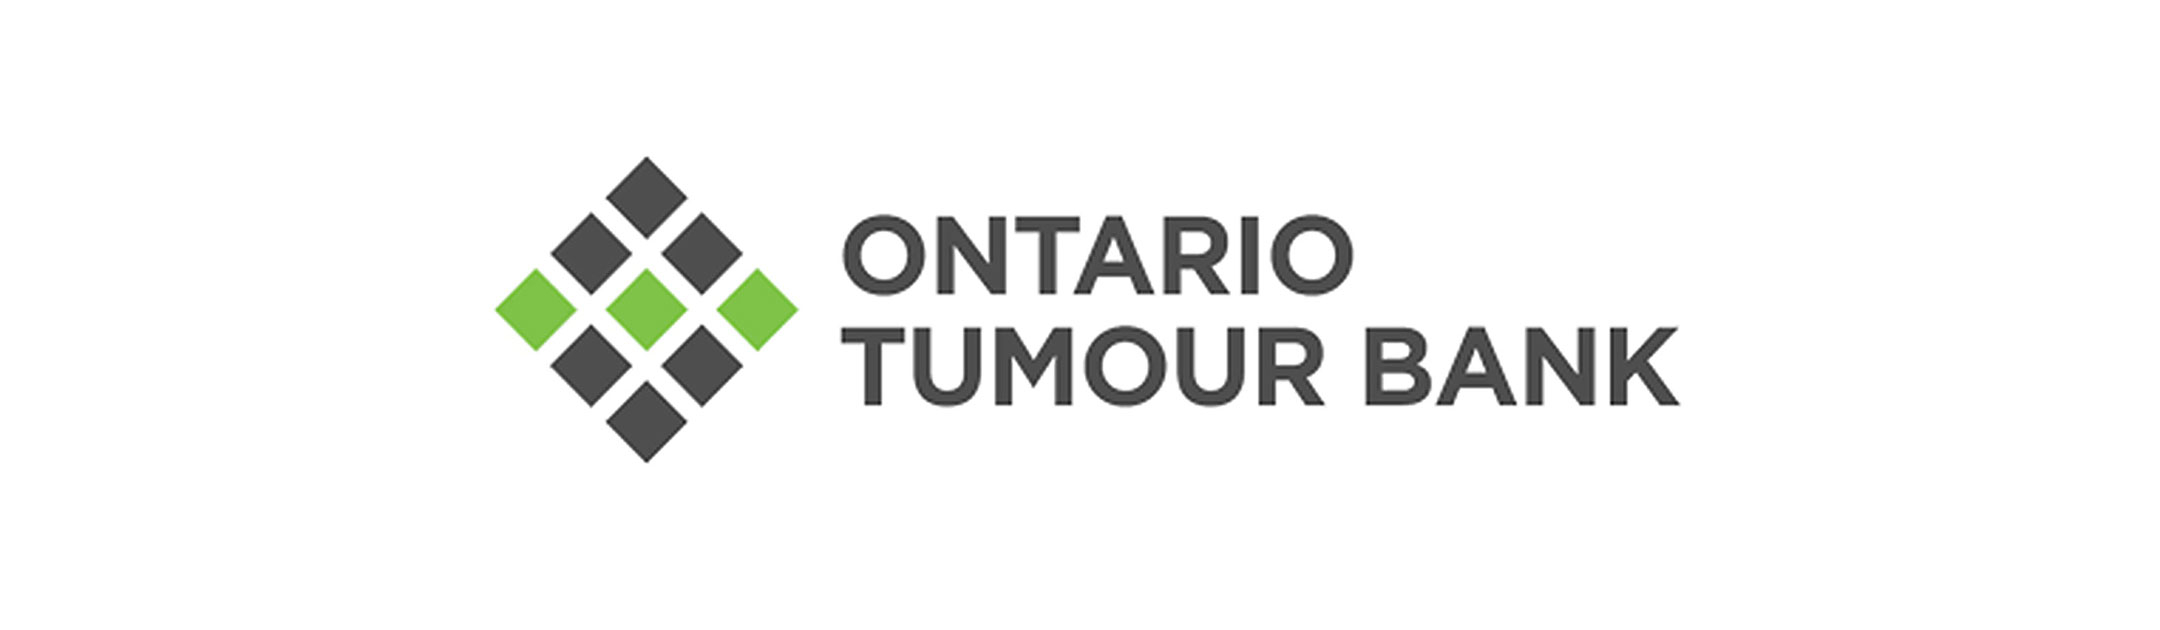 Ontario Tumour Bank